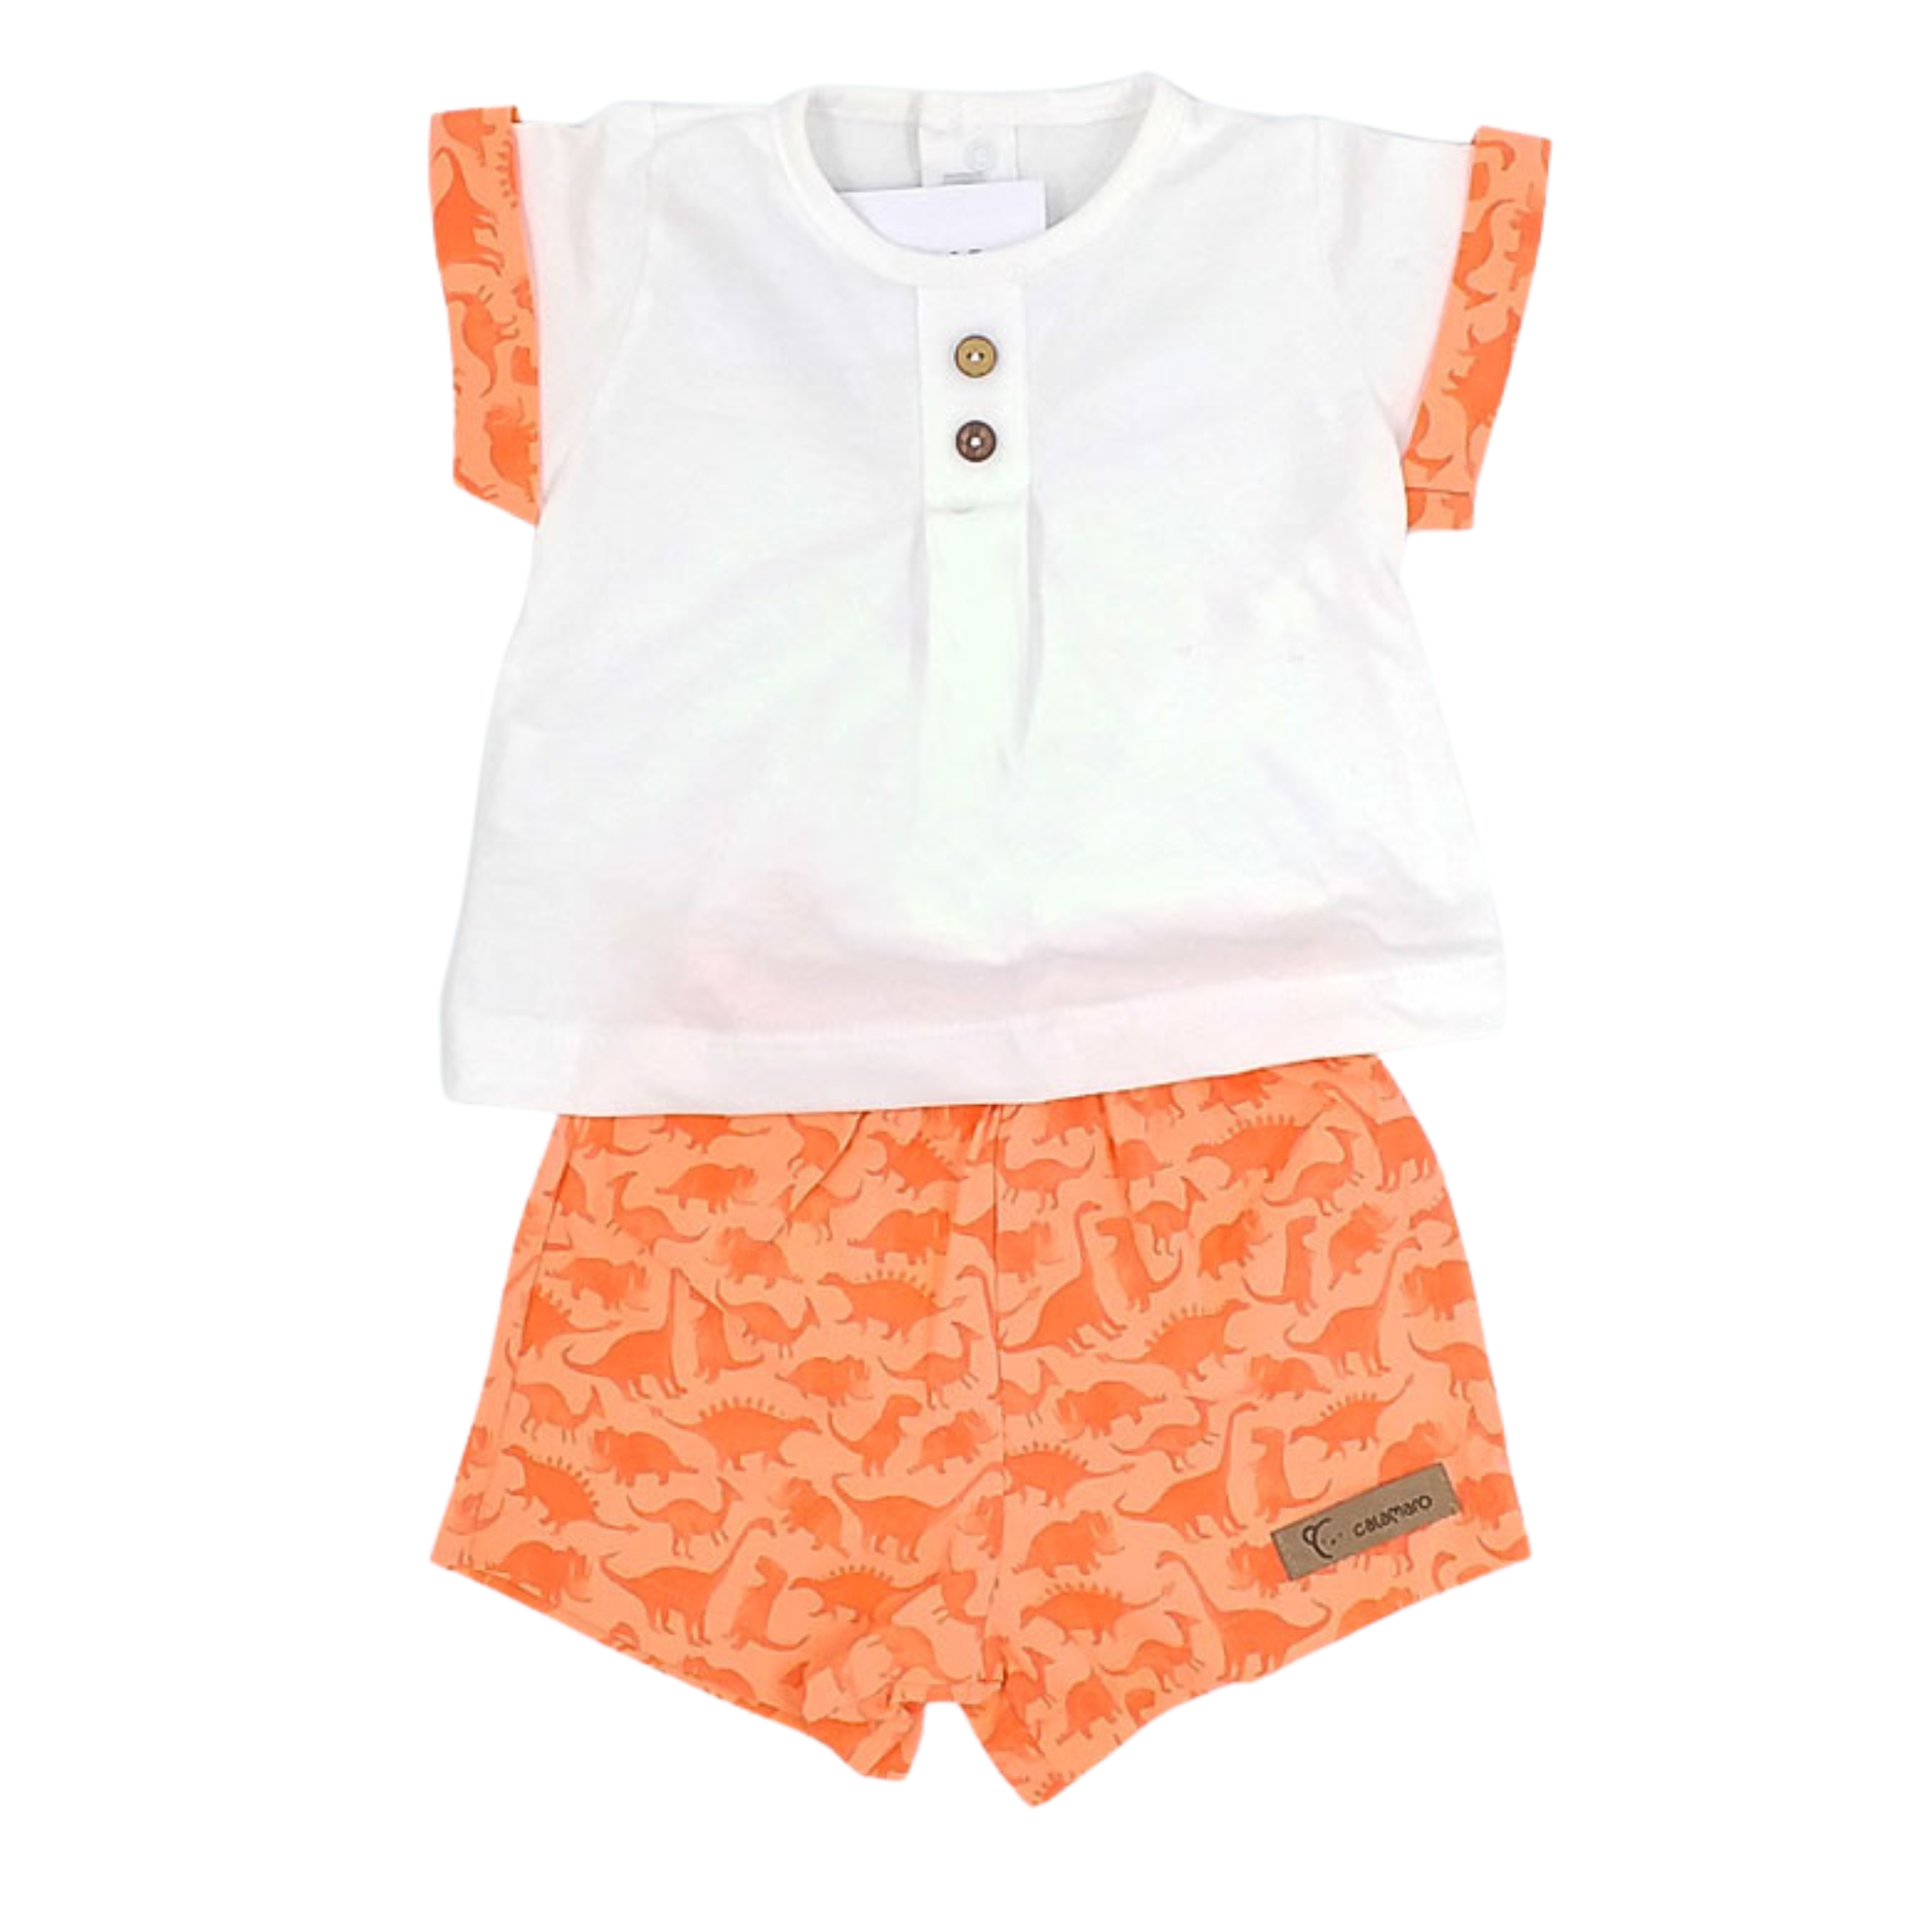 Imagen de conjunto de camiseta blanca con mangas y pantalón naranjas con dibujos image number null